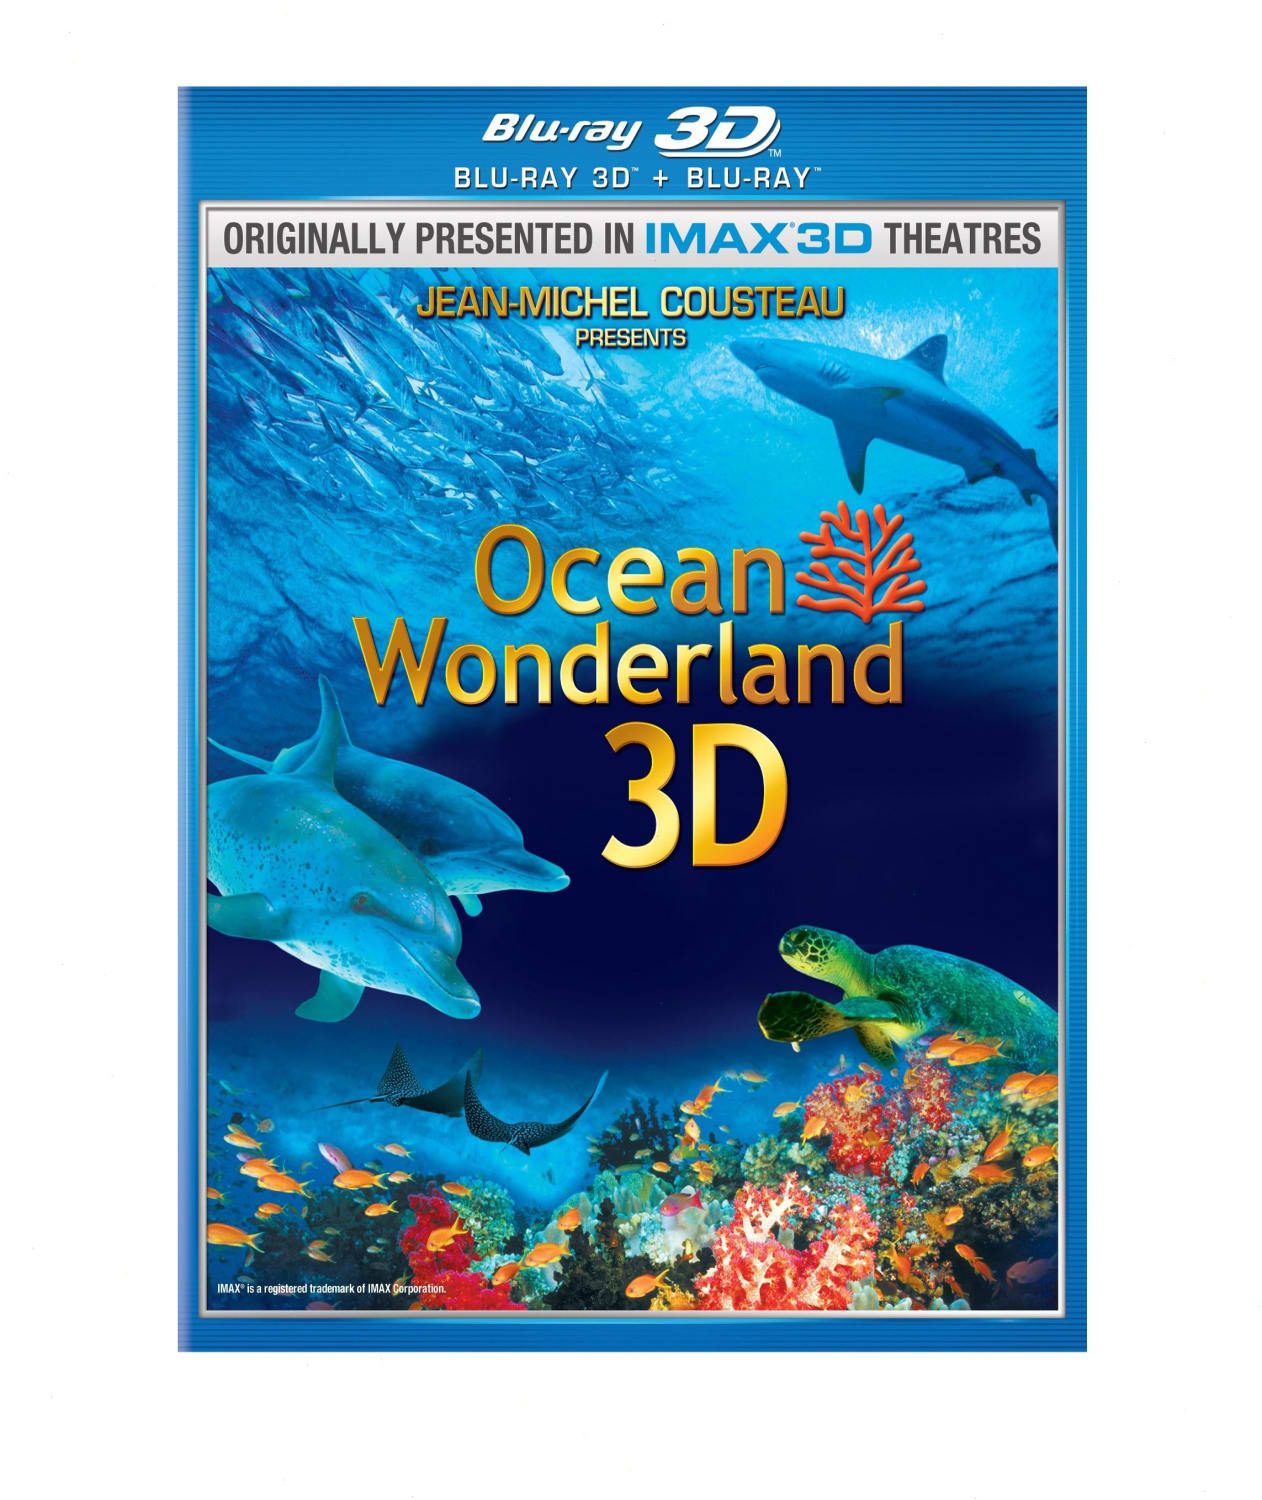 Ocean Wonderland 3D (Blu-ray 3D) on MovieShack